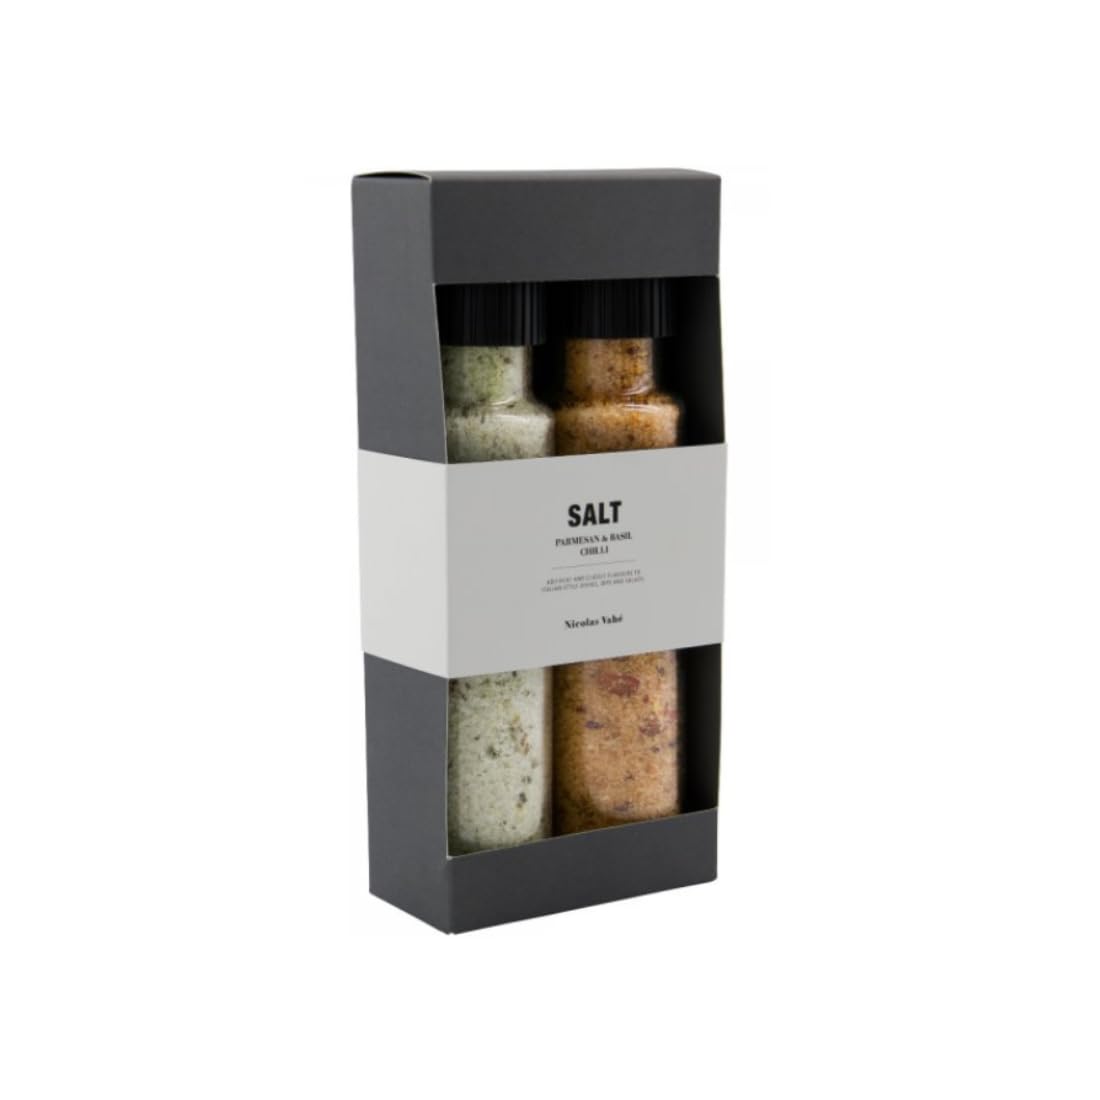 Nicolas Vahé Geschenkbox, Parmesan & Basil Salt & Chilli Salt, 320 g., 315 g.